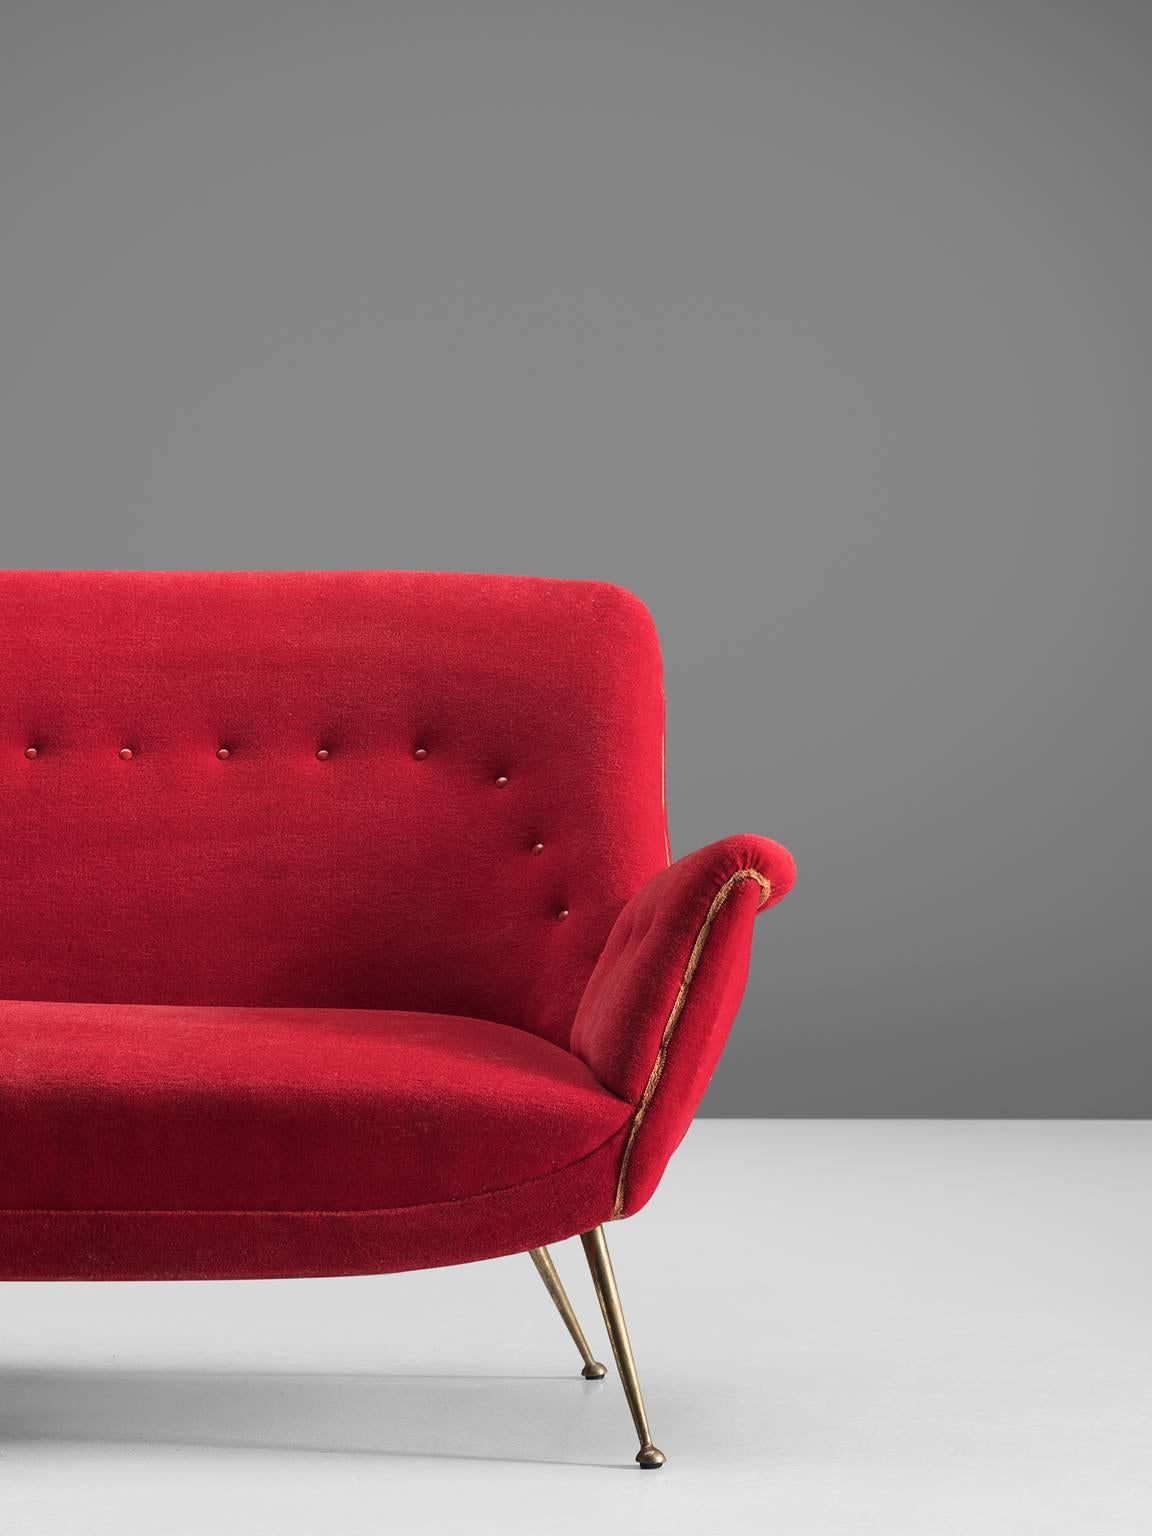 Venetian Red Fabric Italian Sofa, 1950s 1